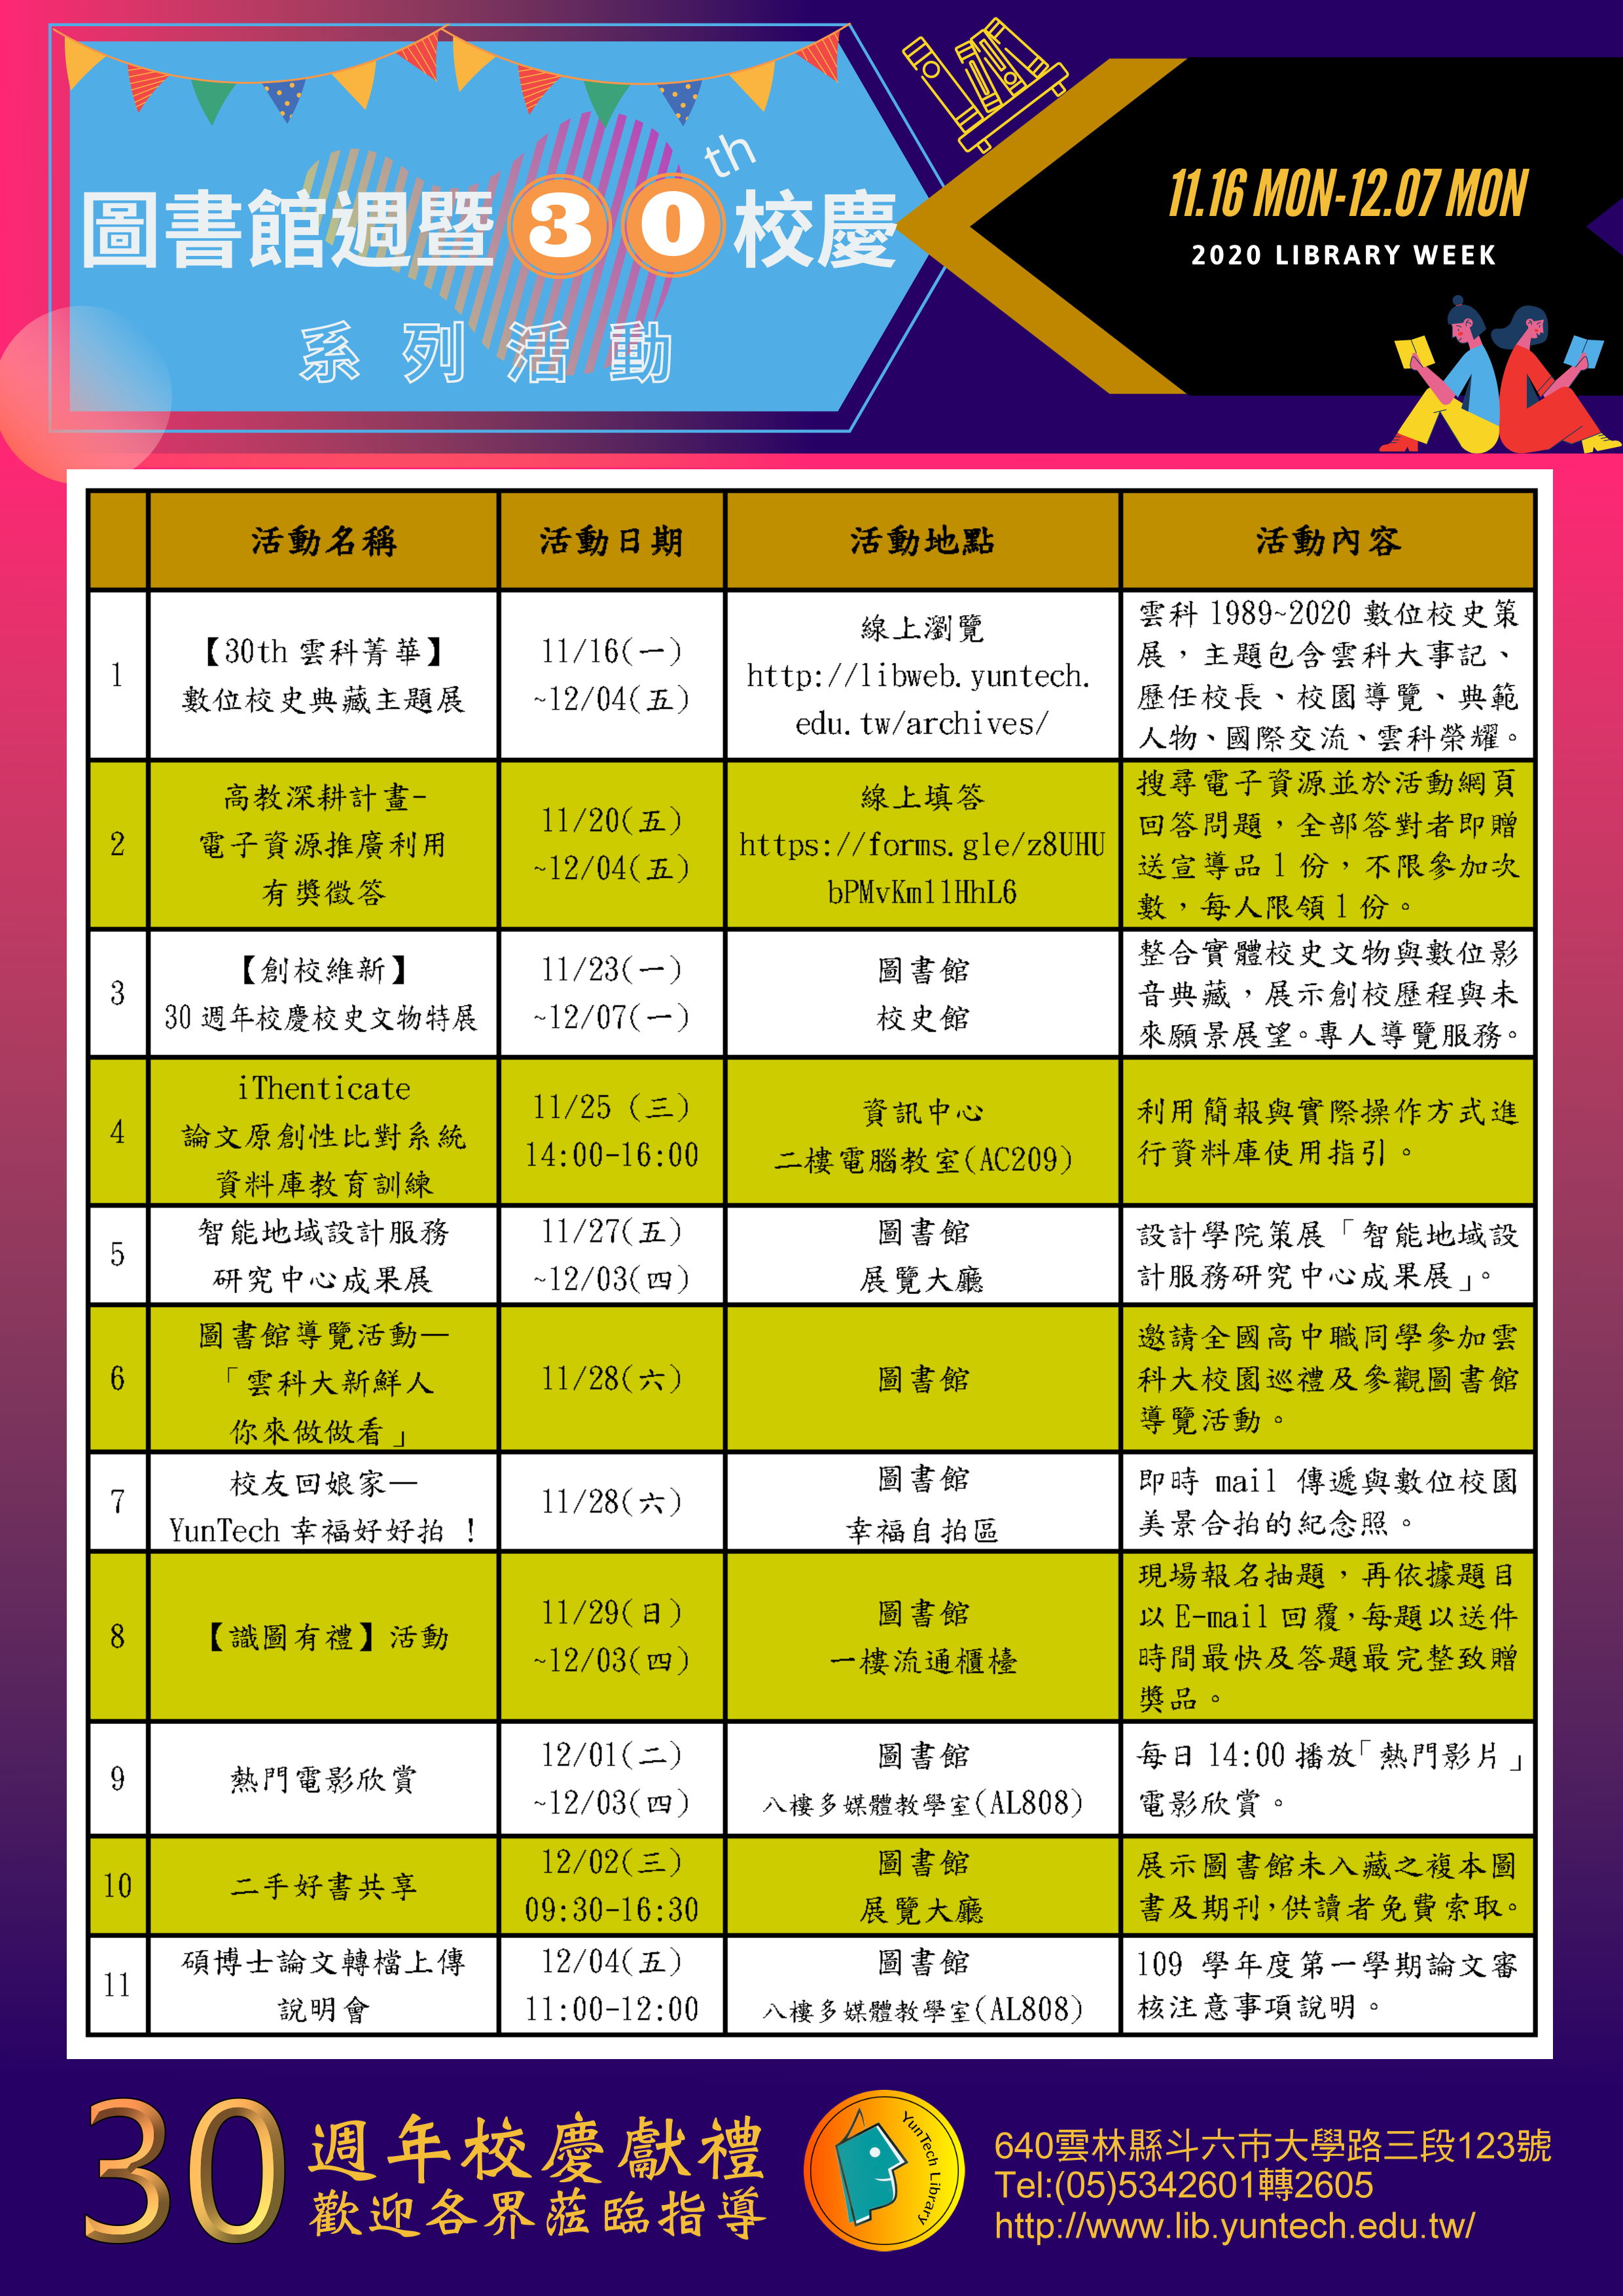 【30th雲科菁華】數位校史 典藏主題展, 圖書館週活動資訊海報